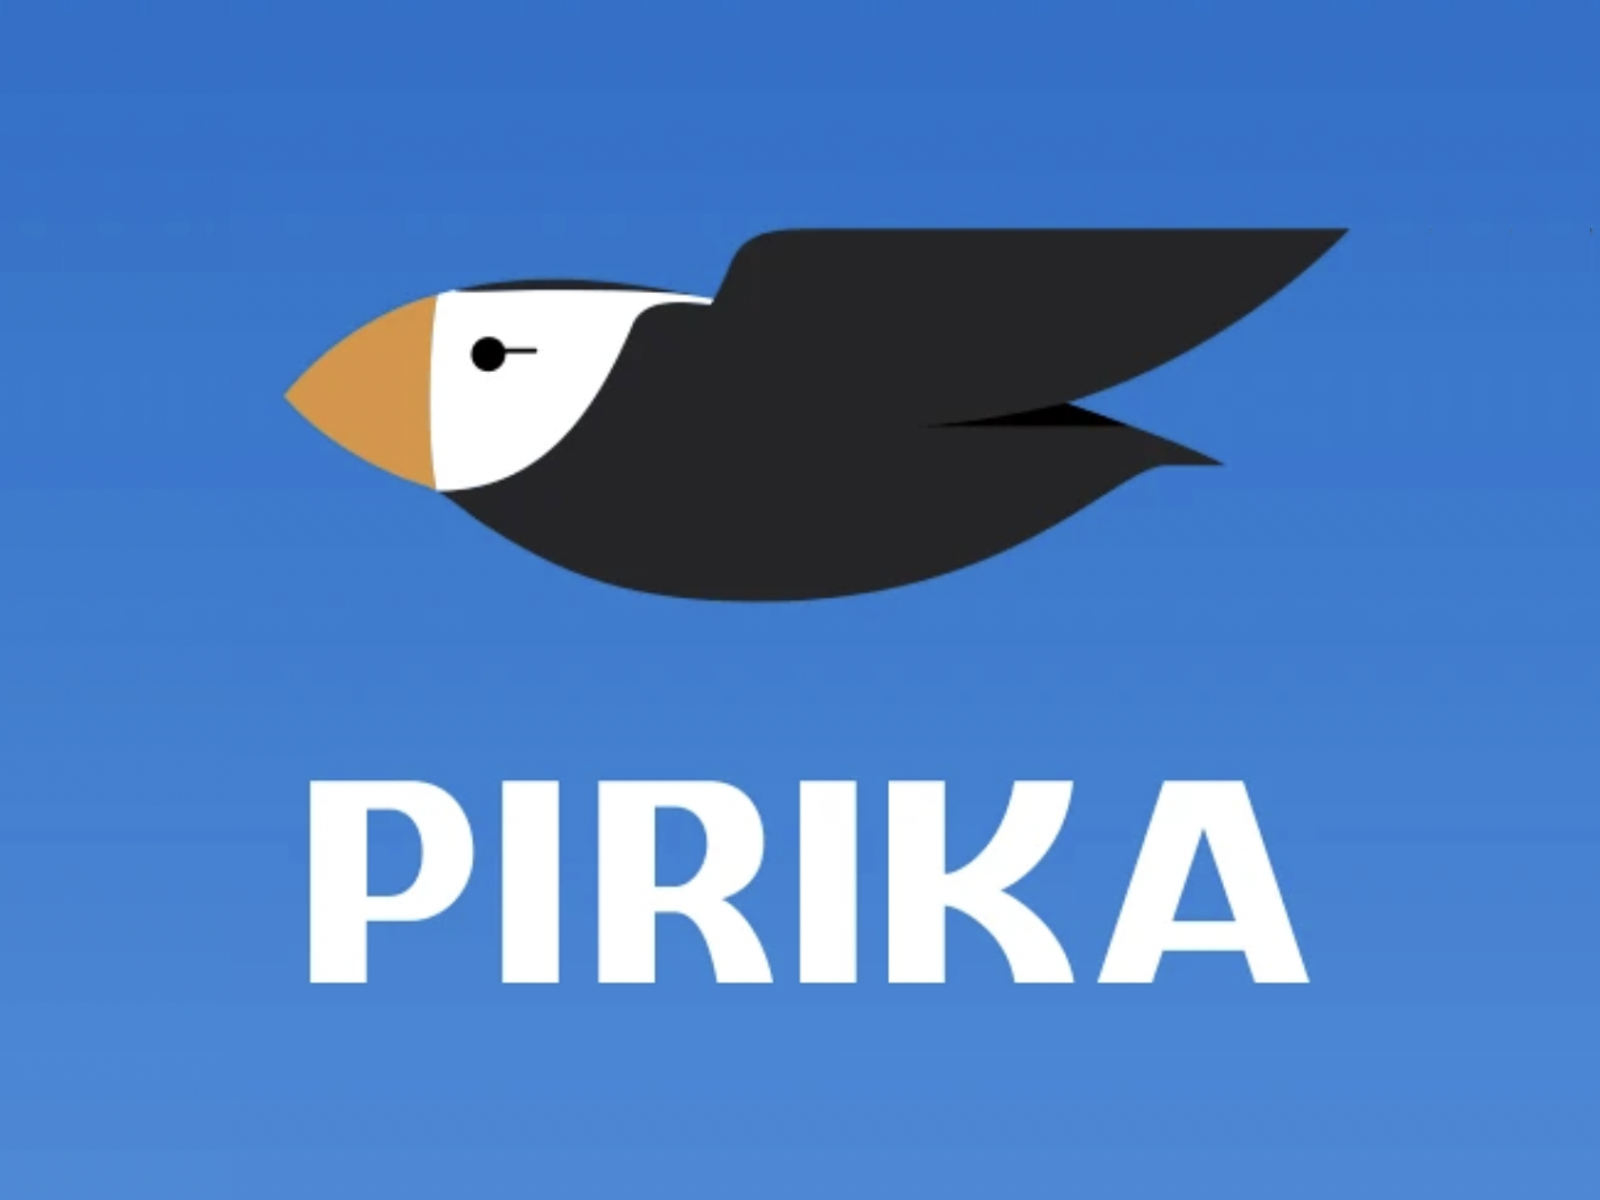 ロゴのモチーフはエトピリカという絶滅危惧種の鳥です。社名である「ピリカ」は アイヌ地方の言葉で「美しい」という意味の言葉です。